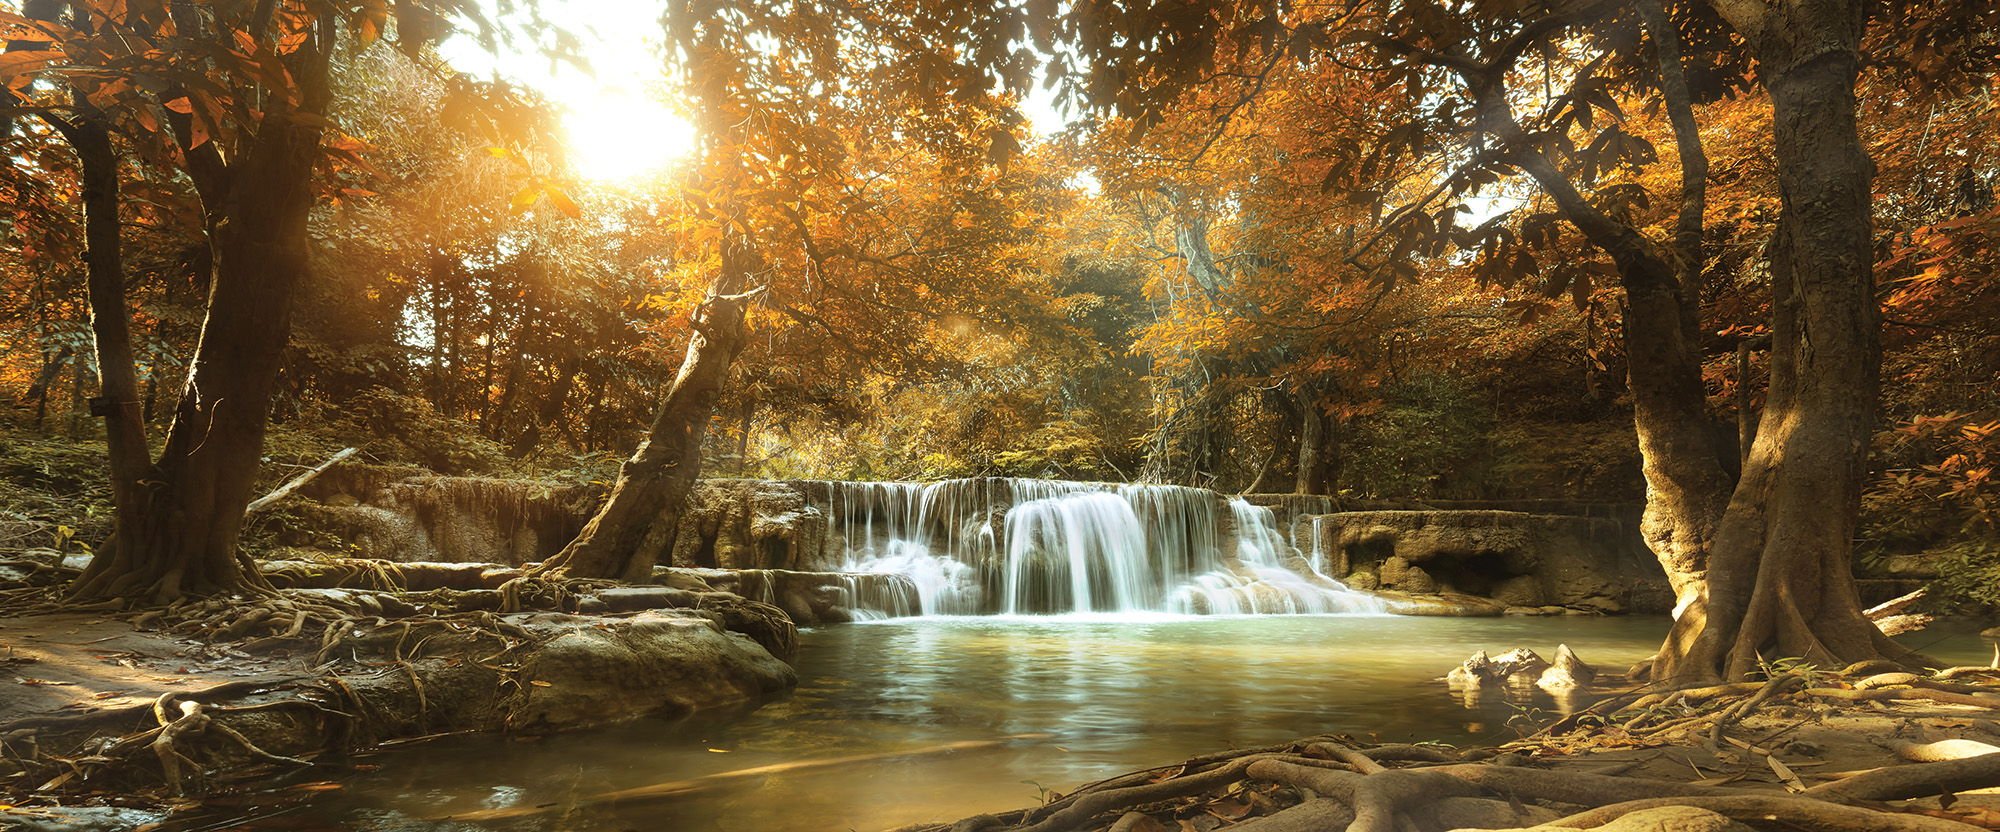 Slika na platnu: Vodopadi u šumi (1) - 145x45 cm